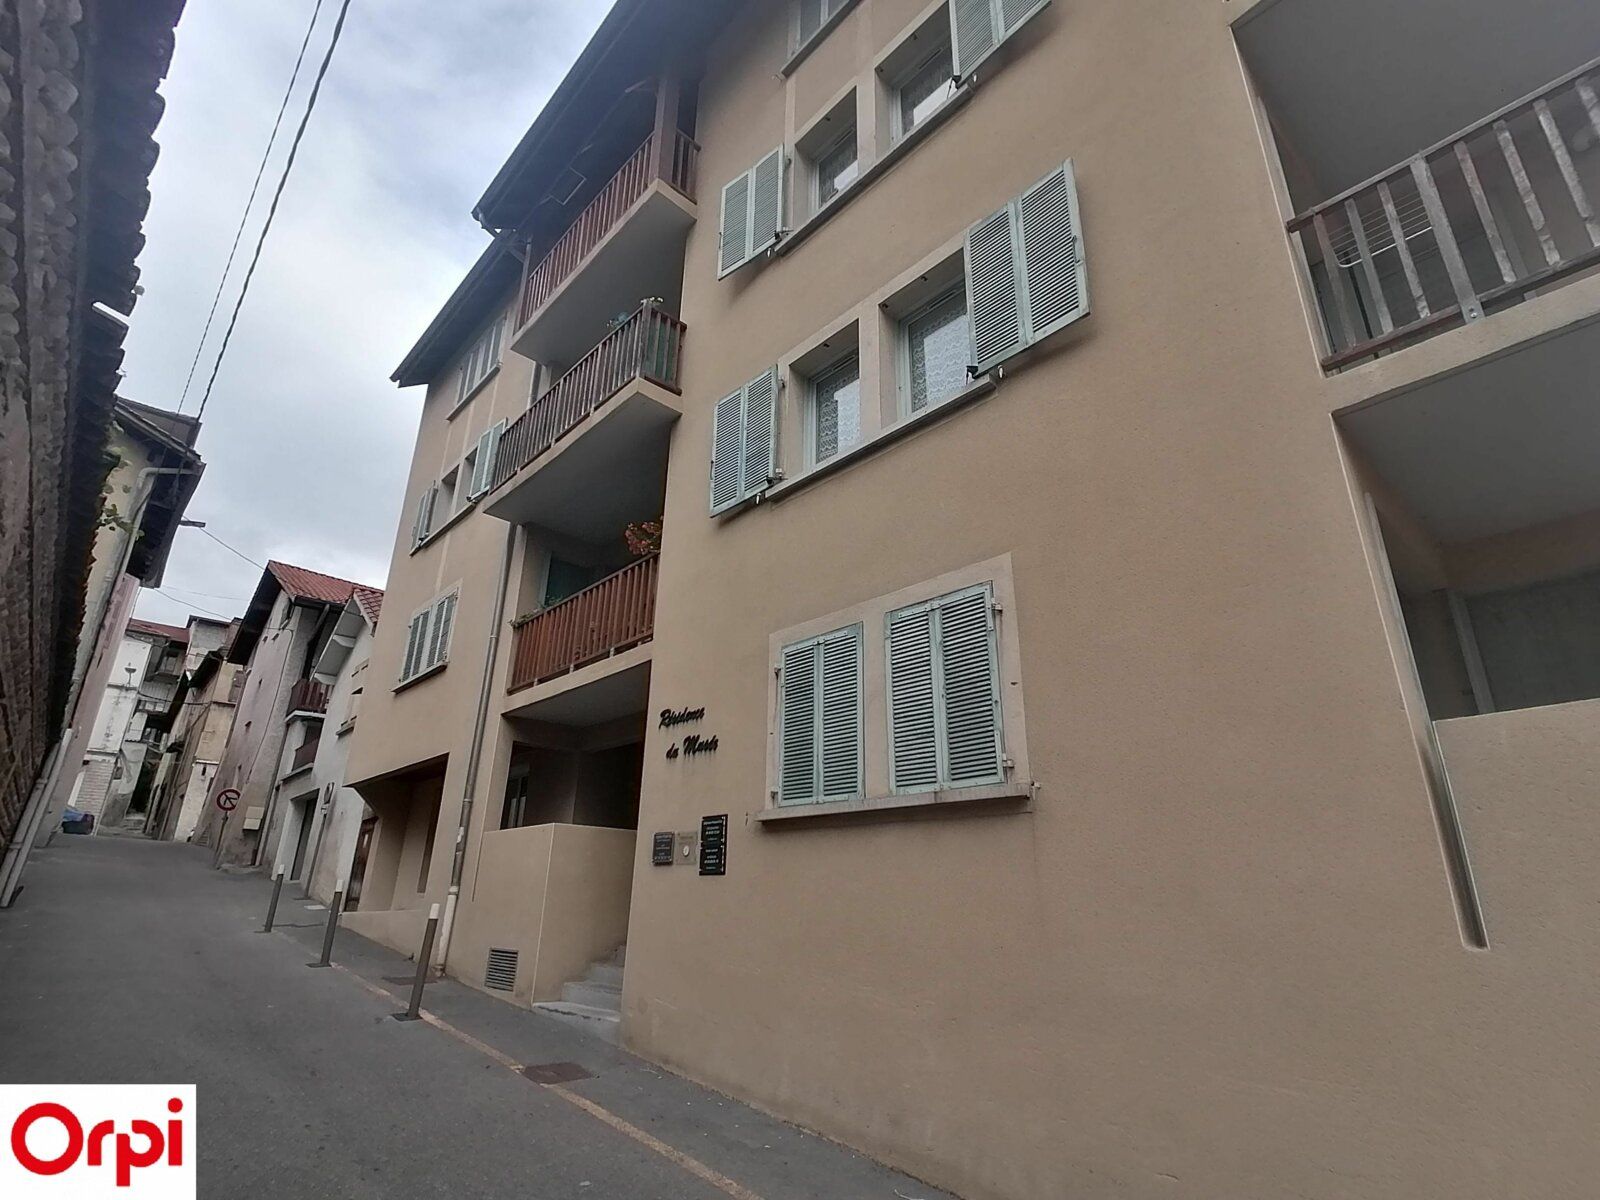 Appartement à louer 4 97.71m2 à La Côte-Saint-André vignette-4